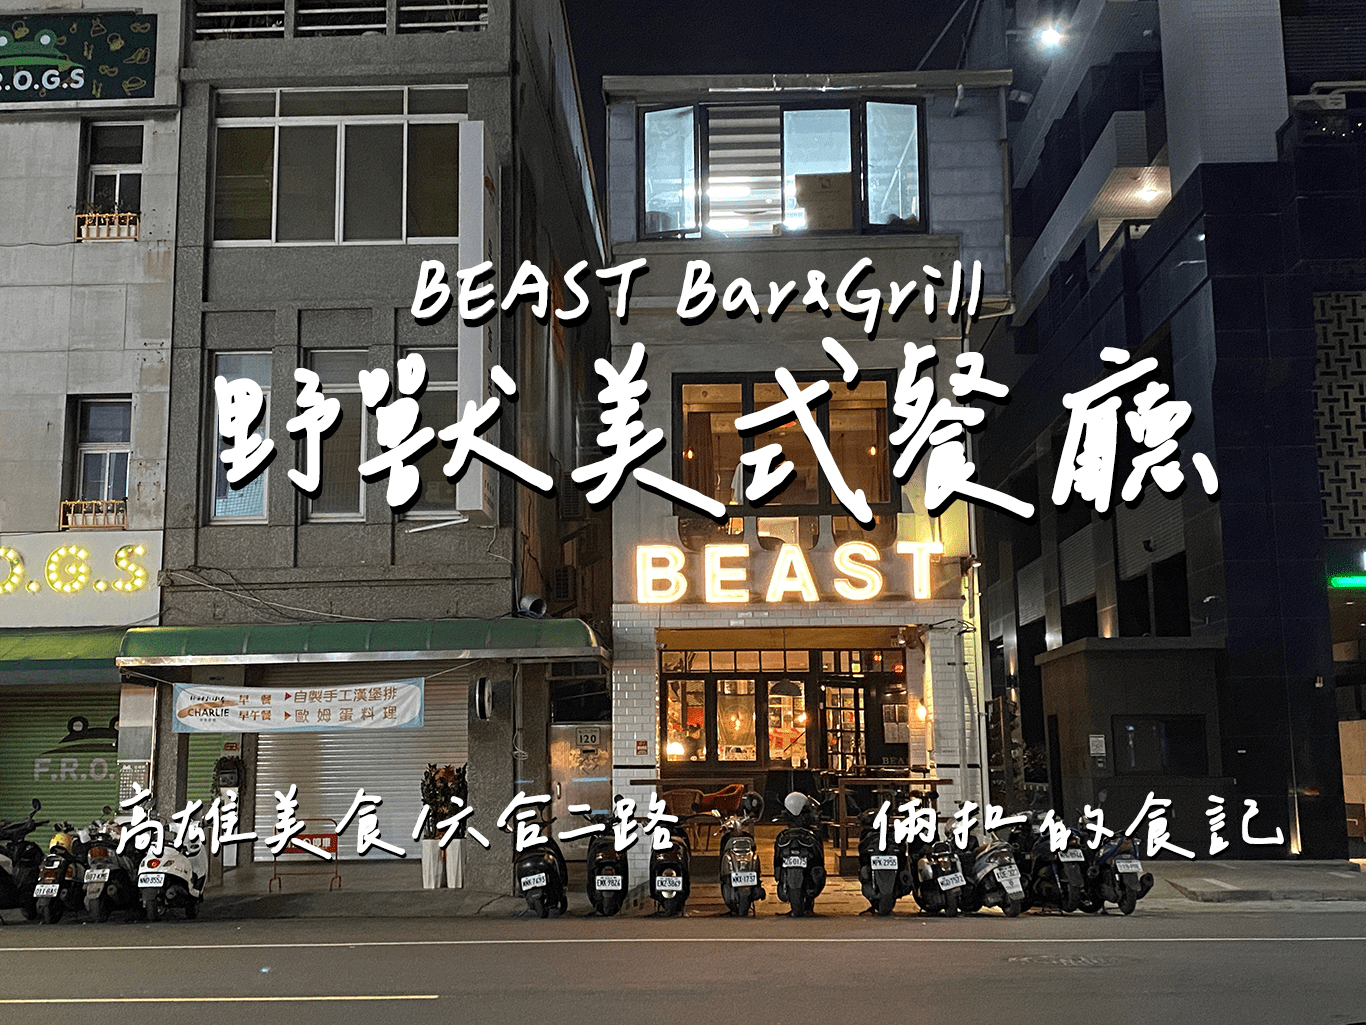 【高雄美食】美式餐廳-BEAST Bar&Grill 野獸美式餐廳 好吃漢堡 聚餐與宵夜的好選擇!